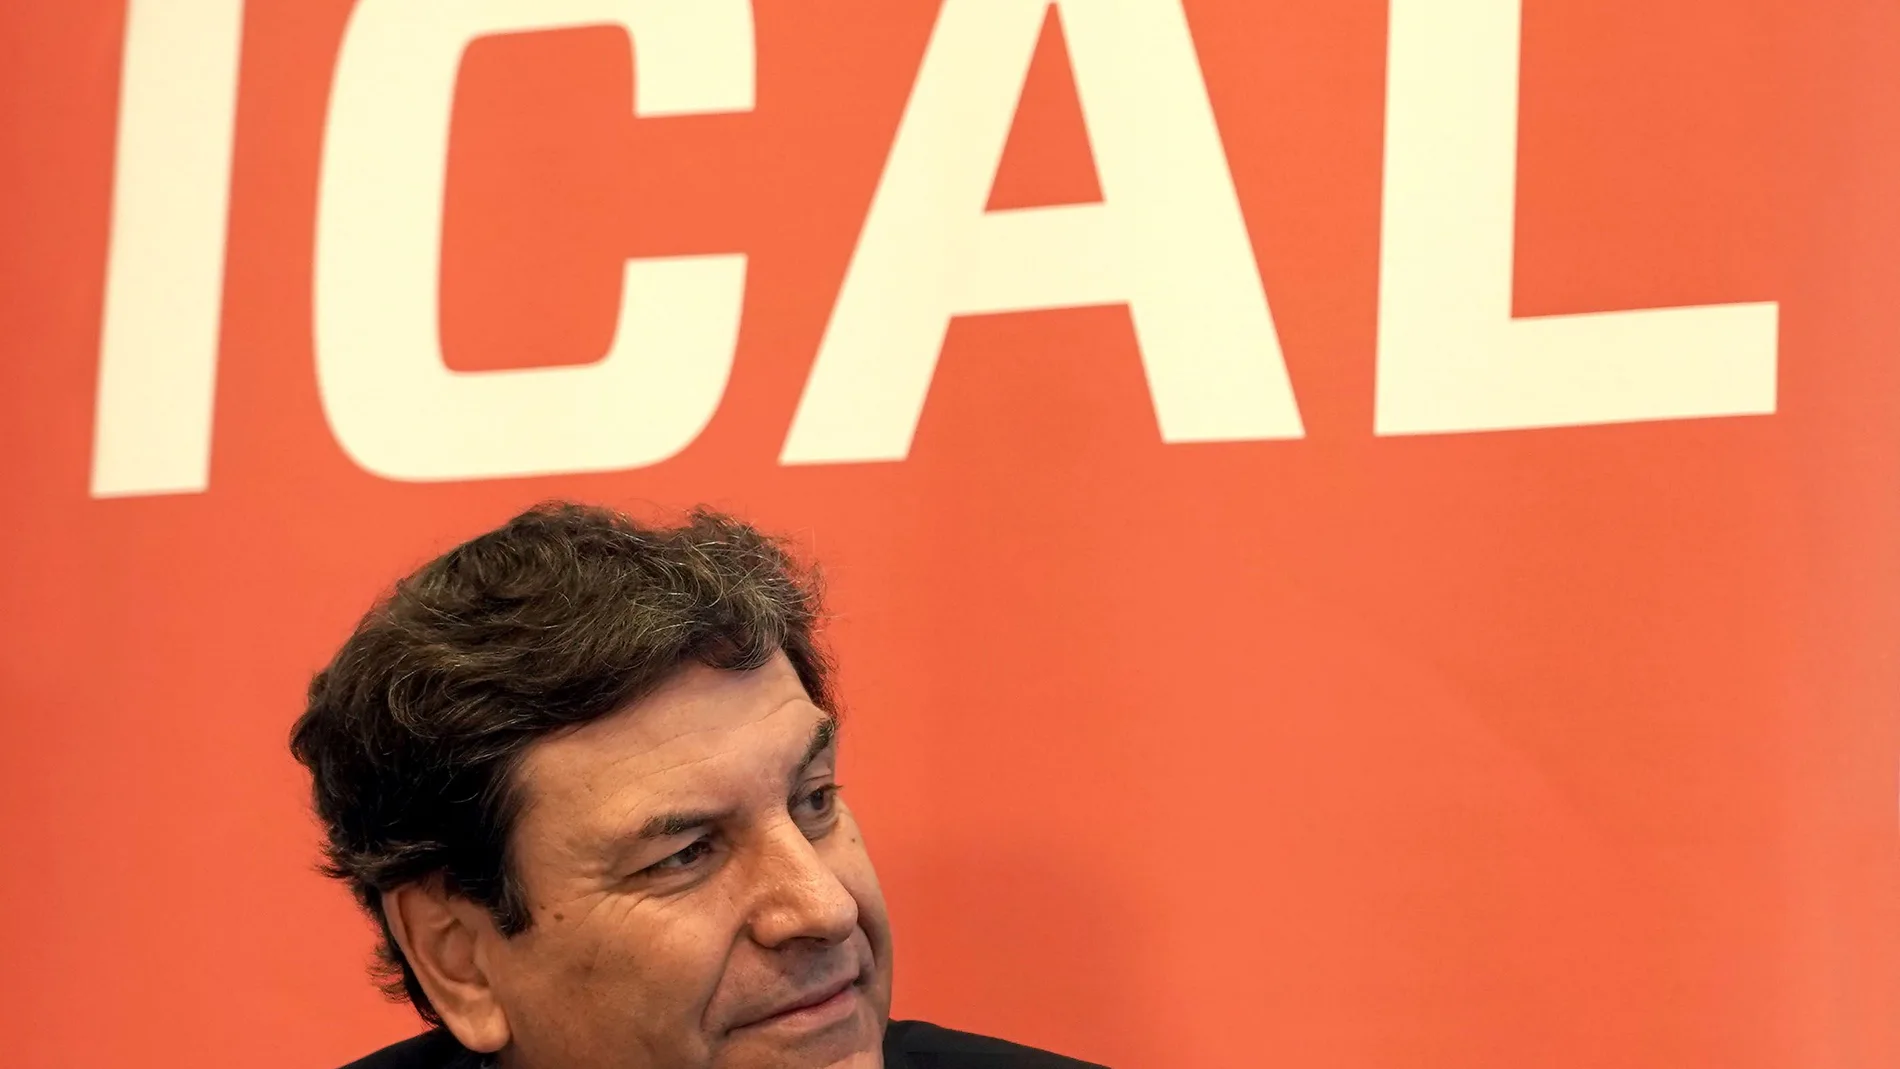 El consejero de Economía y Hacienda, Carlos Fernández Carriedo, participa en los Desayunos de la Agencia Ical